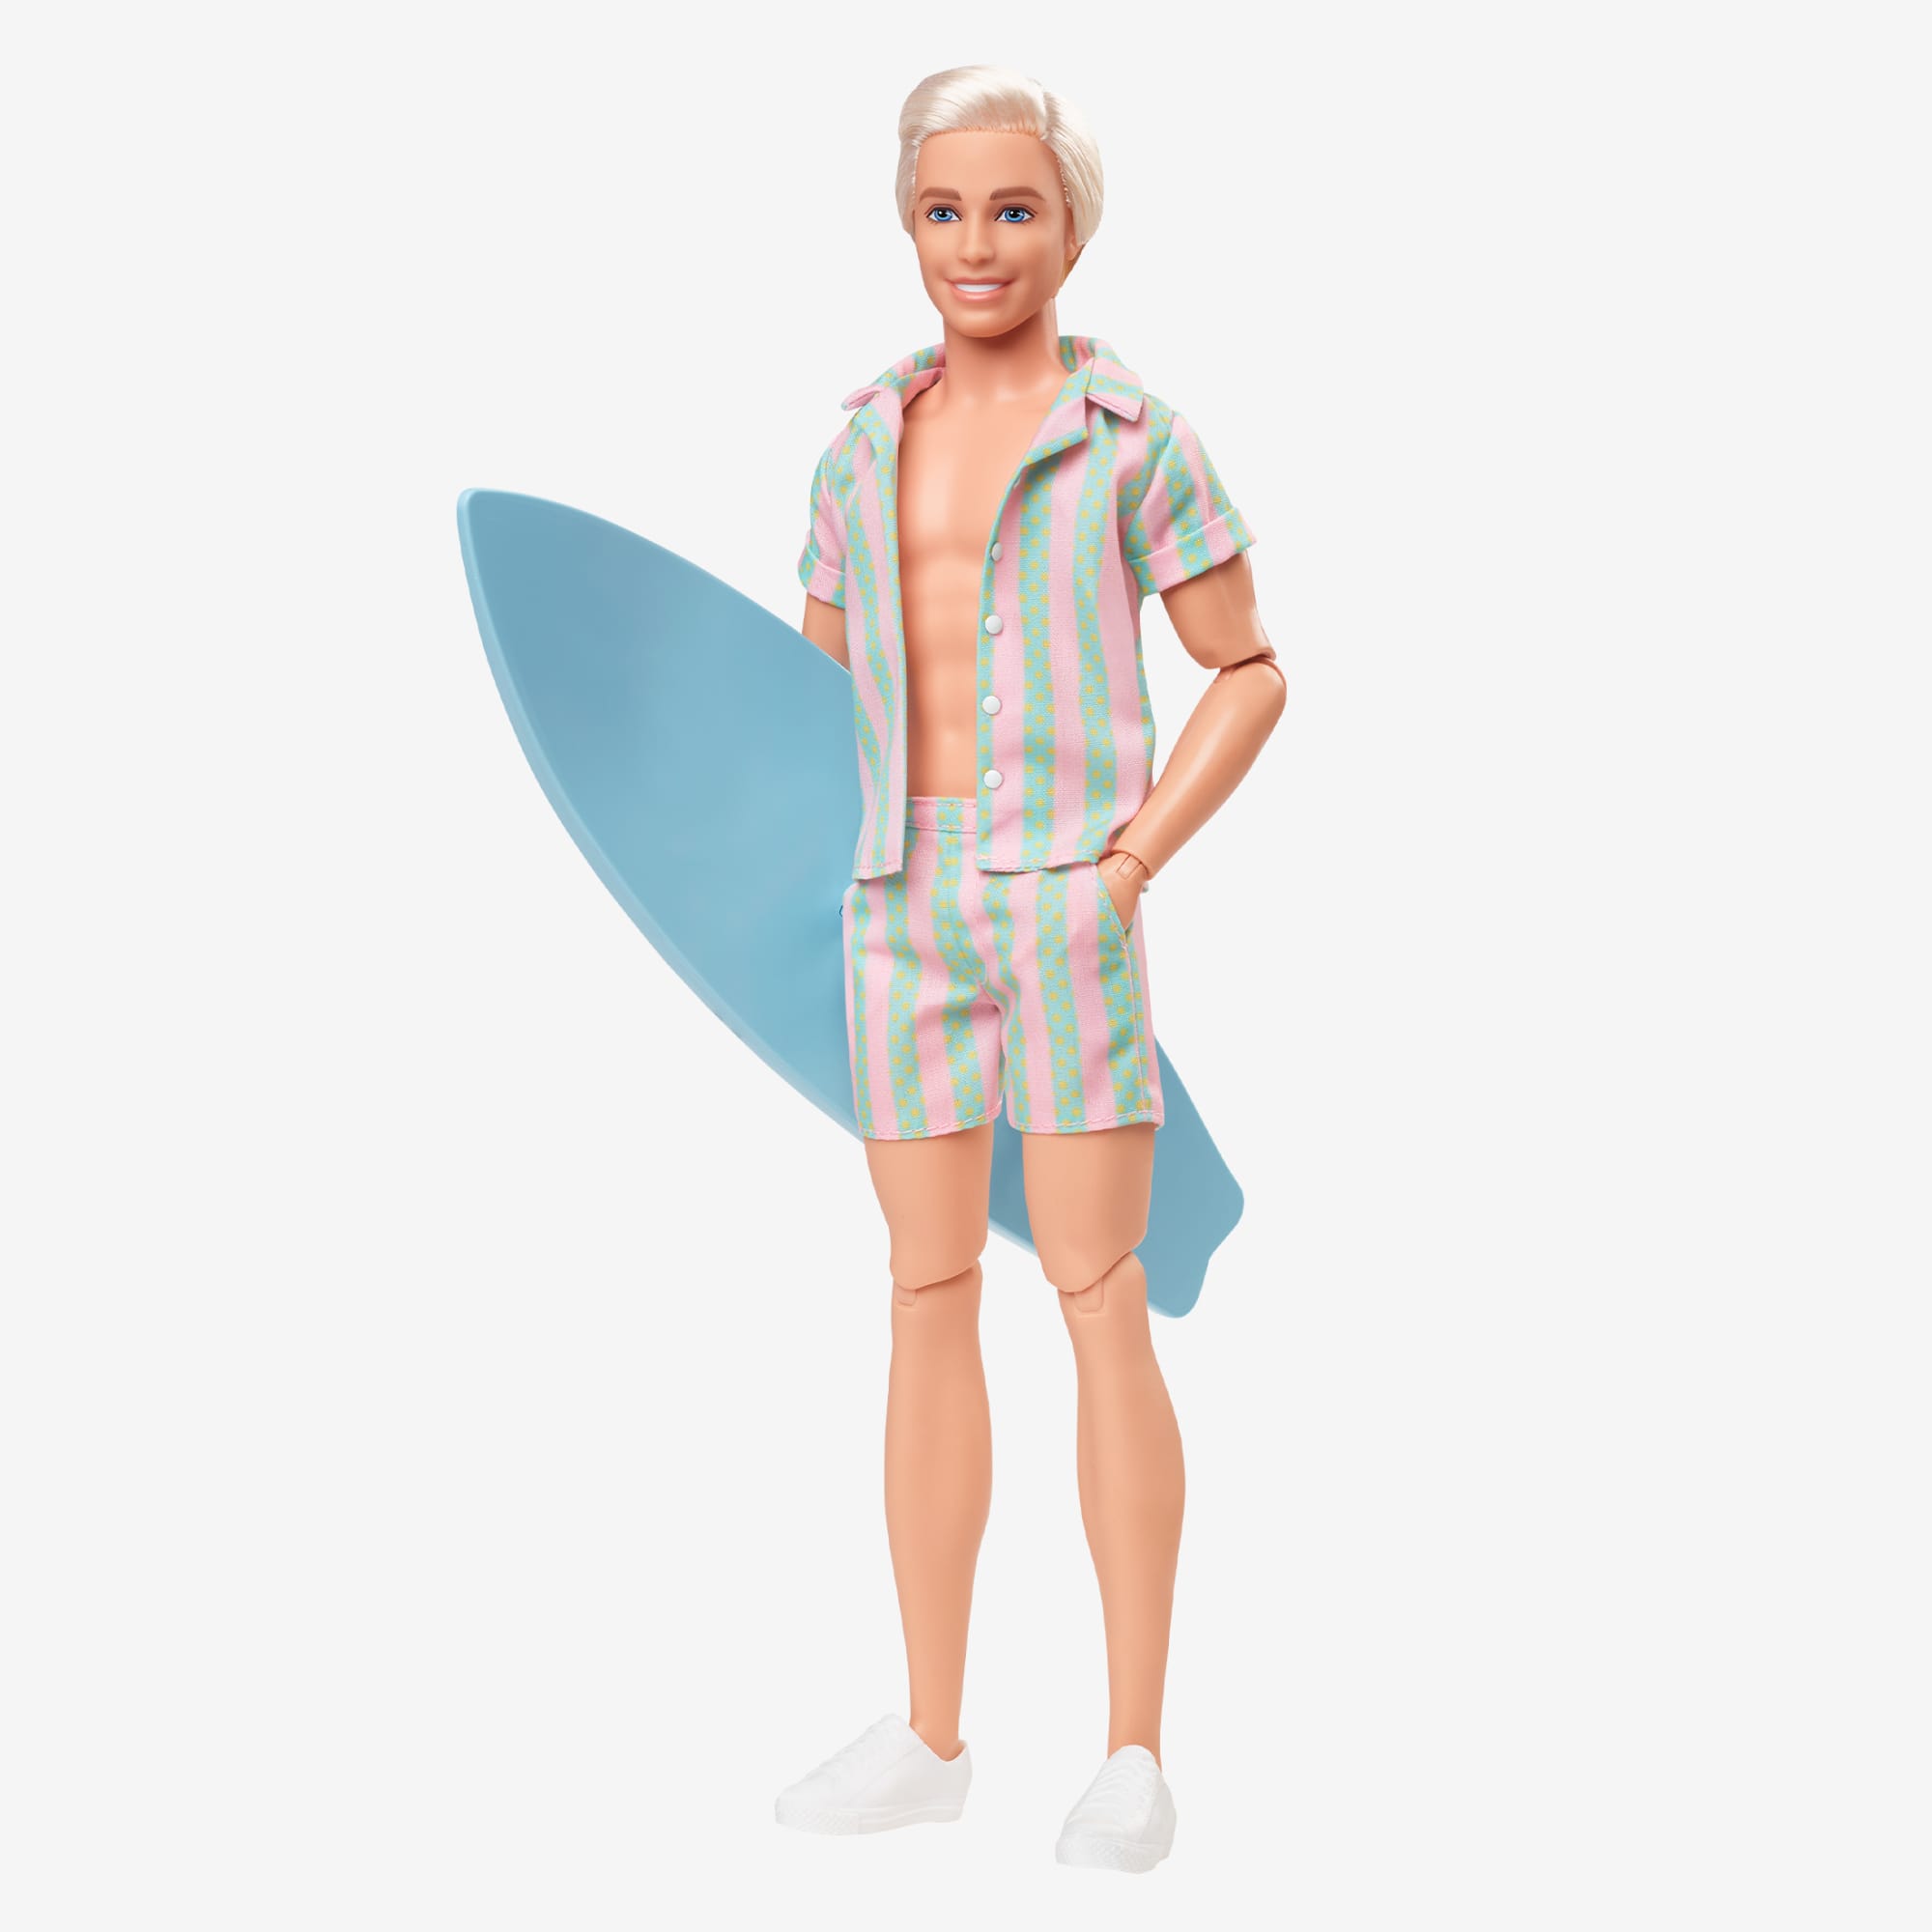 Mattel Barbie Ken Wearing Striped Beach Set with Surfboard 